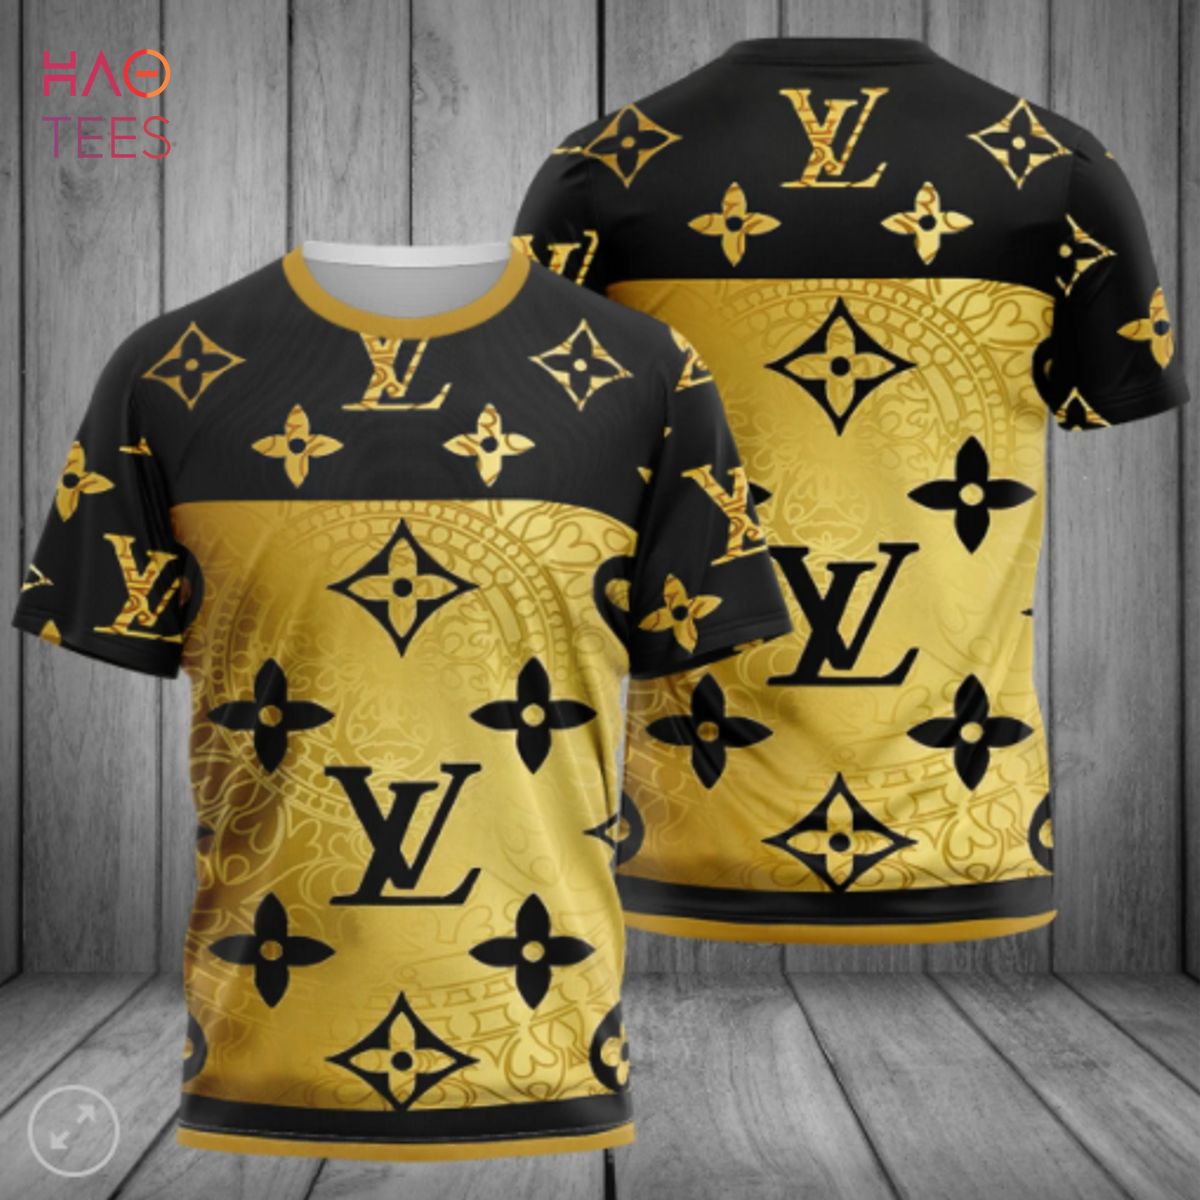 LV Monogram T-Shirt - Luxury Black